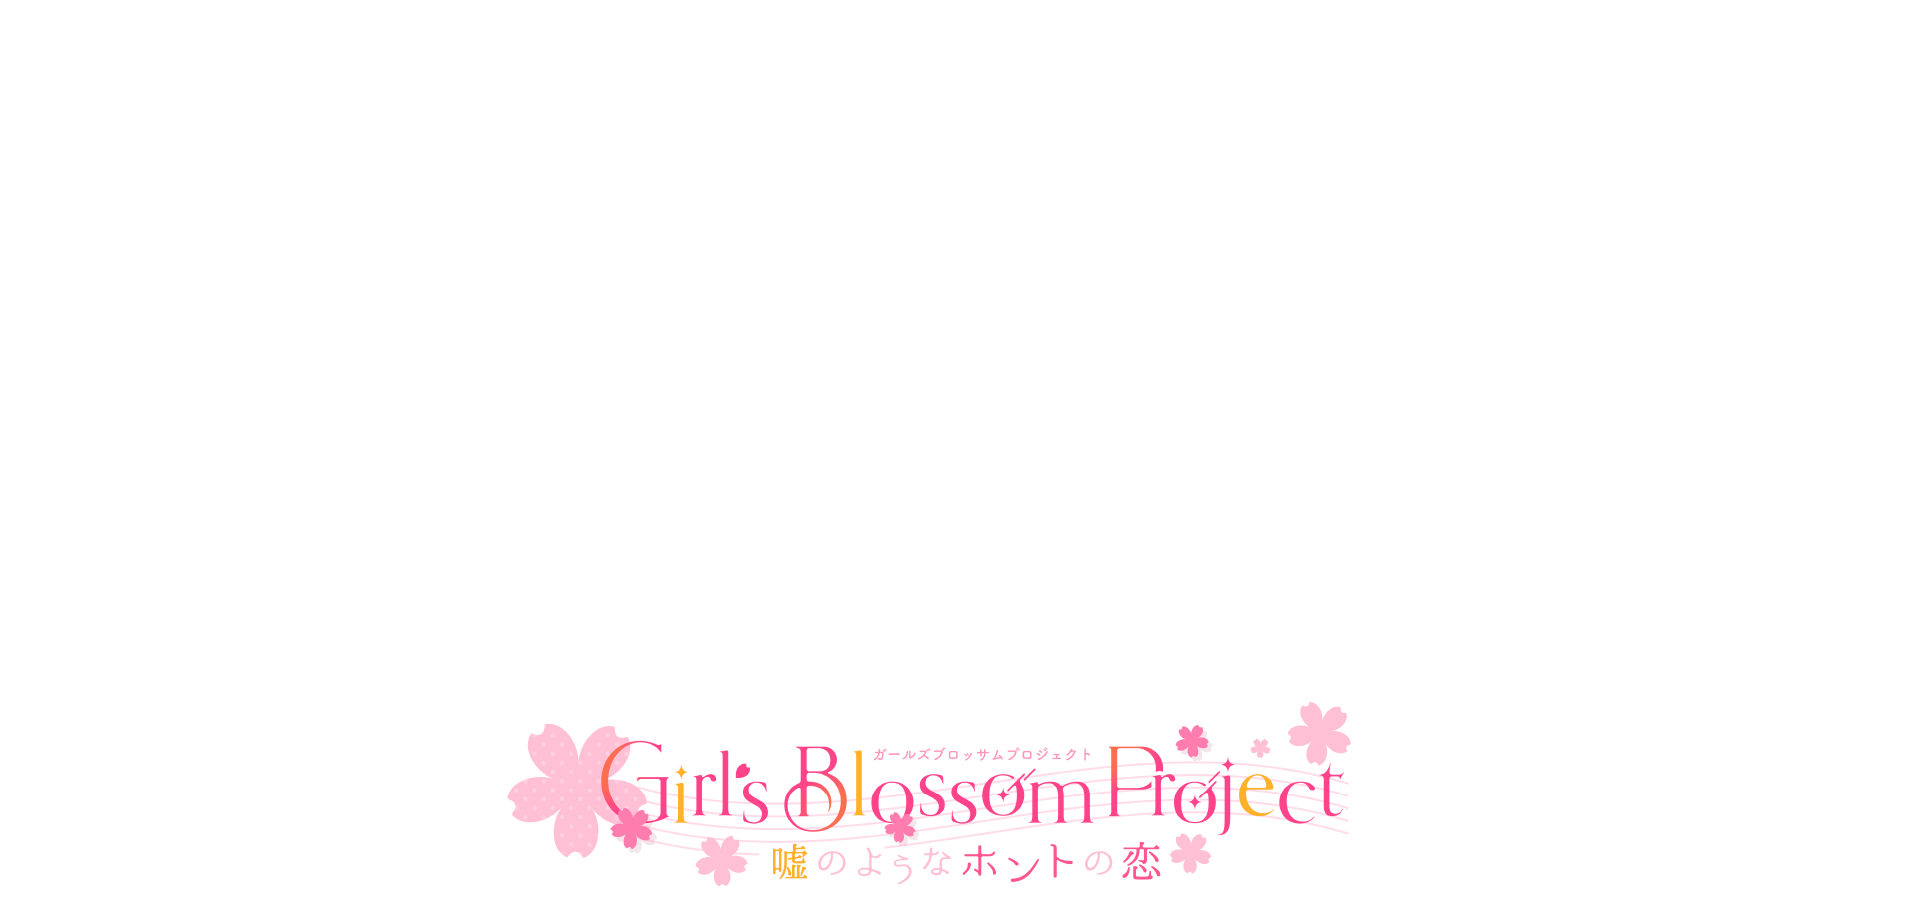 Girl's Blossom Project〜嘘のようなホントの恋〜